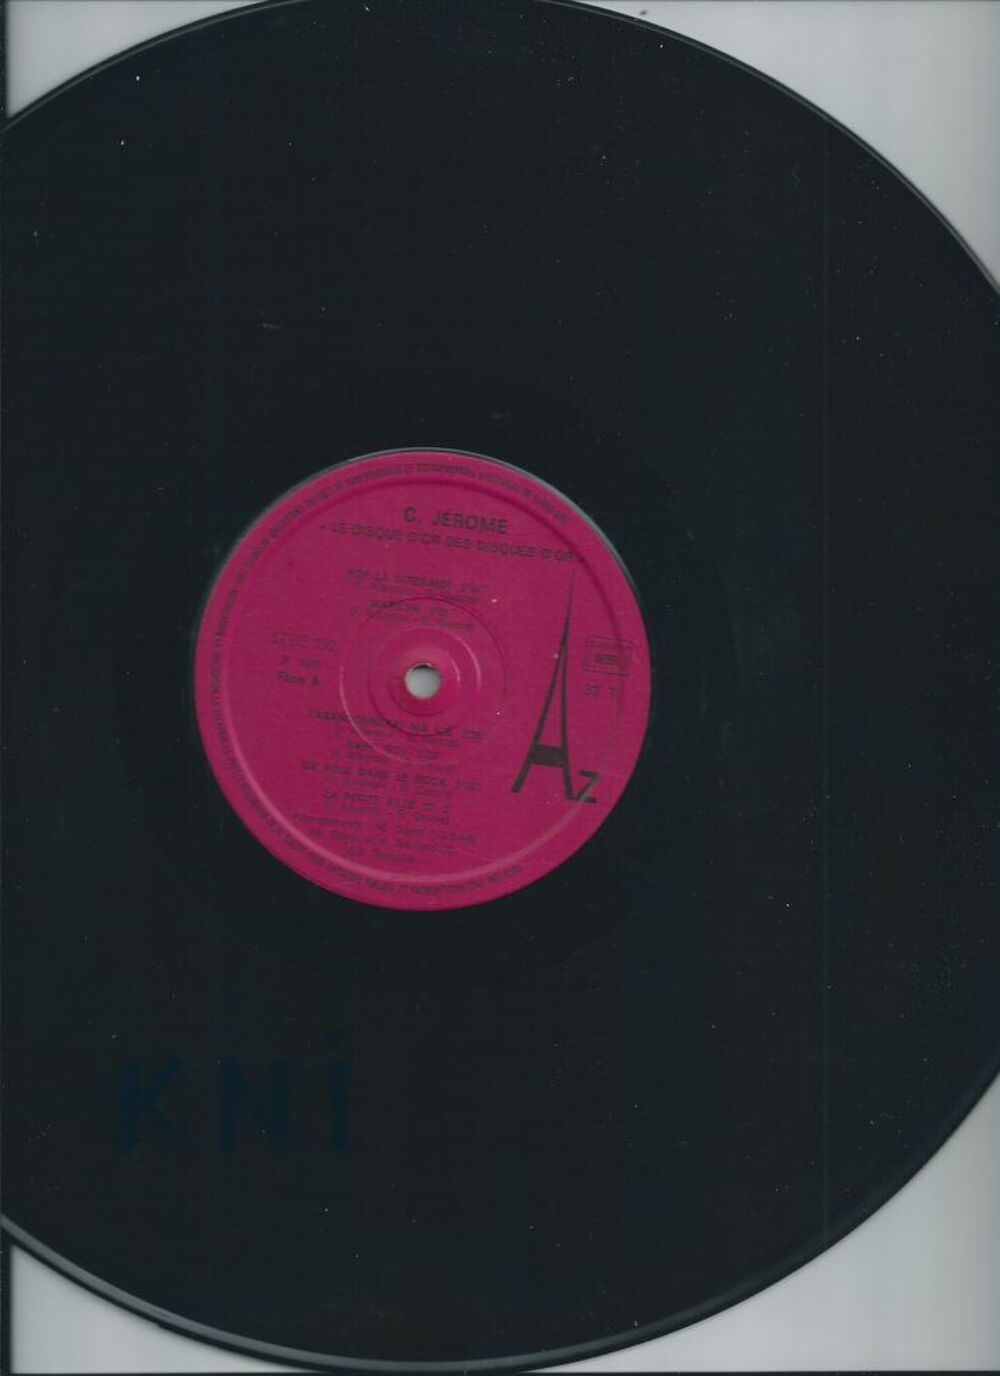 Vinyle 33T , C Jerome ,Hop la dites moi 1975 CD et vinyles